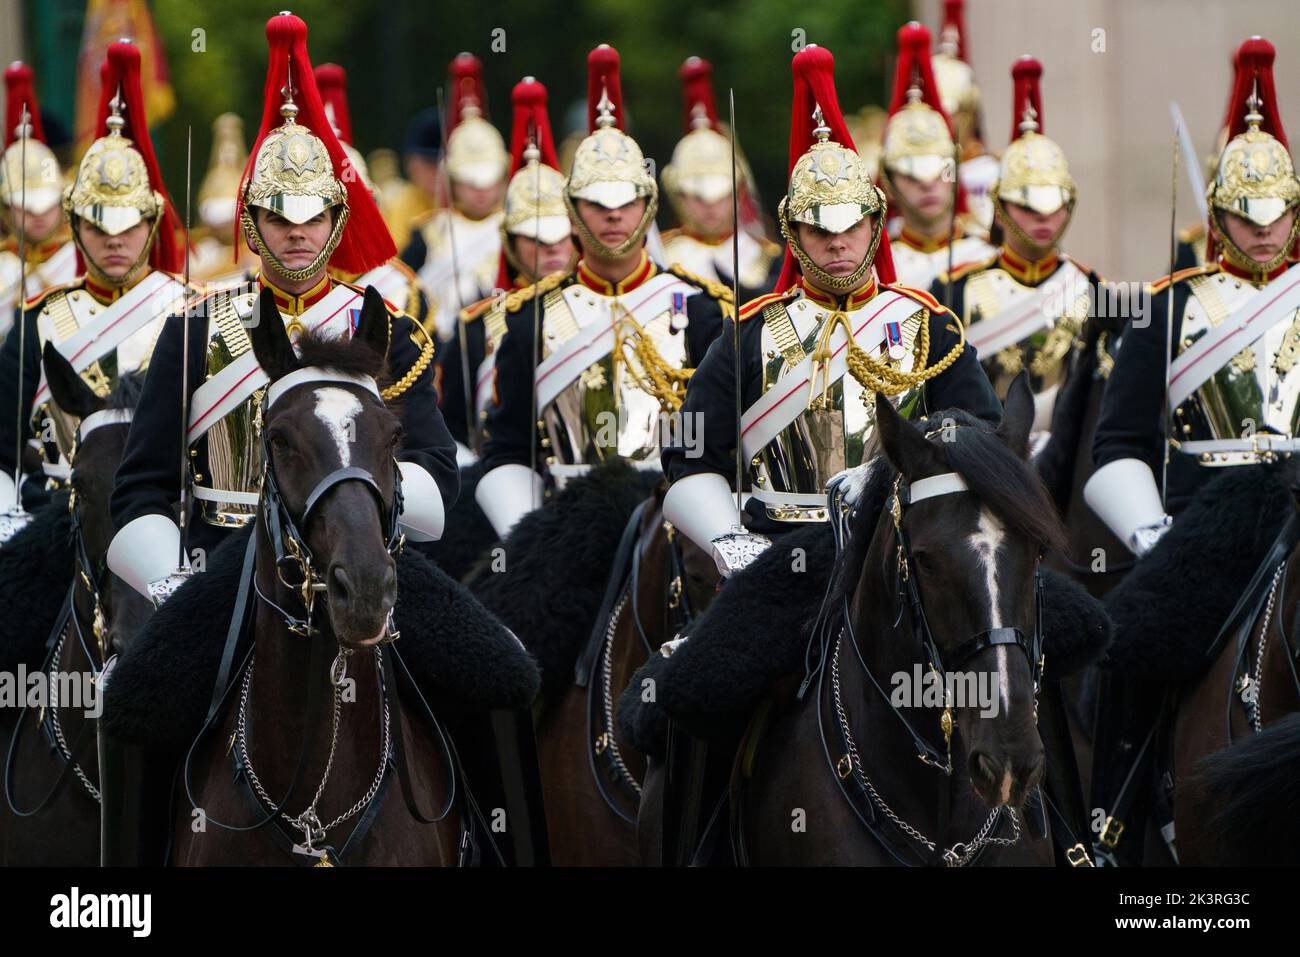 LONDRES - SEPTEMBRE 19 : la cavalerie de la maison est composée des deux régiments les plus hauts de l'armée britannique, les gardes de vie et les Bleus et Royals. La cavalerie fait partie de la Division des ménages et est la garde du corps officielle du roi. Au funérailles d'État de la reine Élisabeth II sur 19 septembre 2022. Photo: David Levenson/Alay Banque D'Images